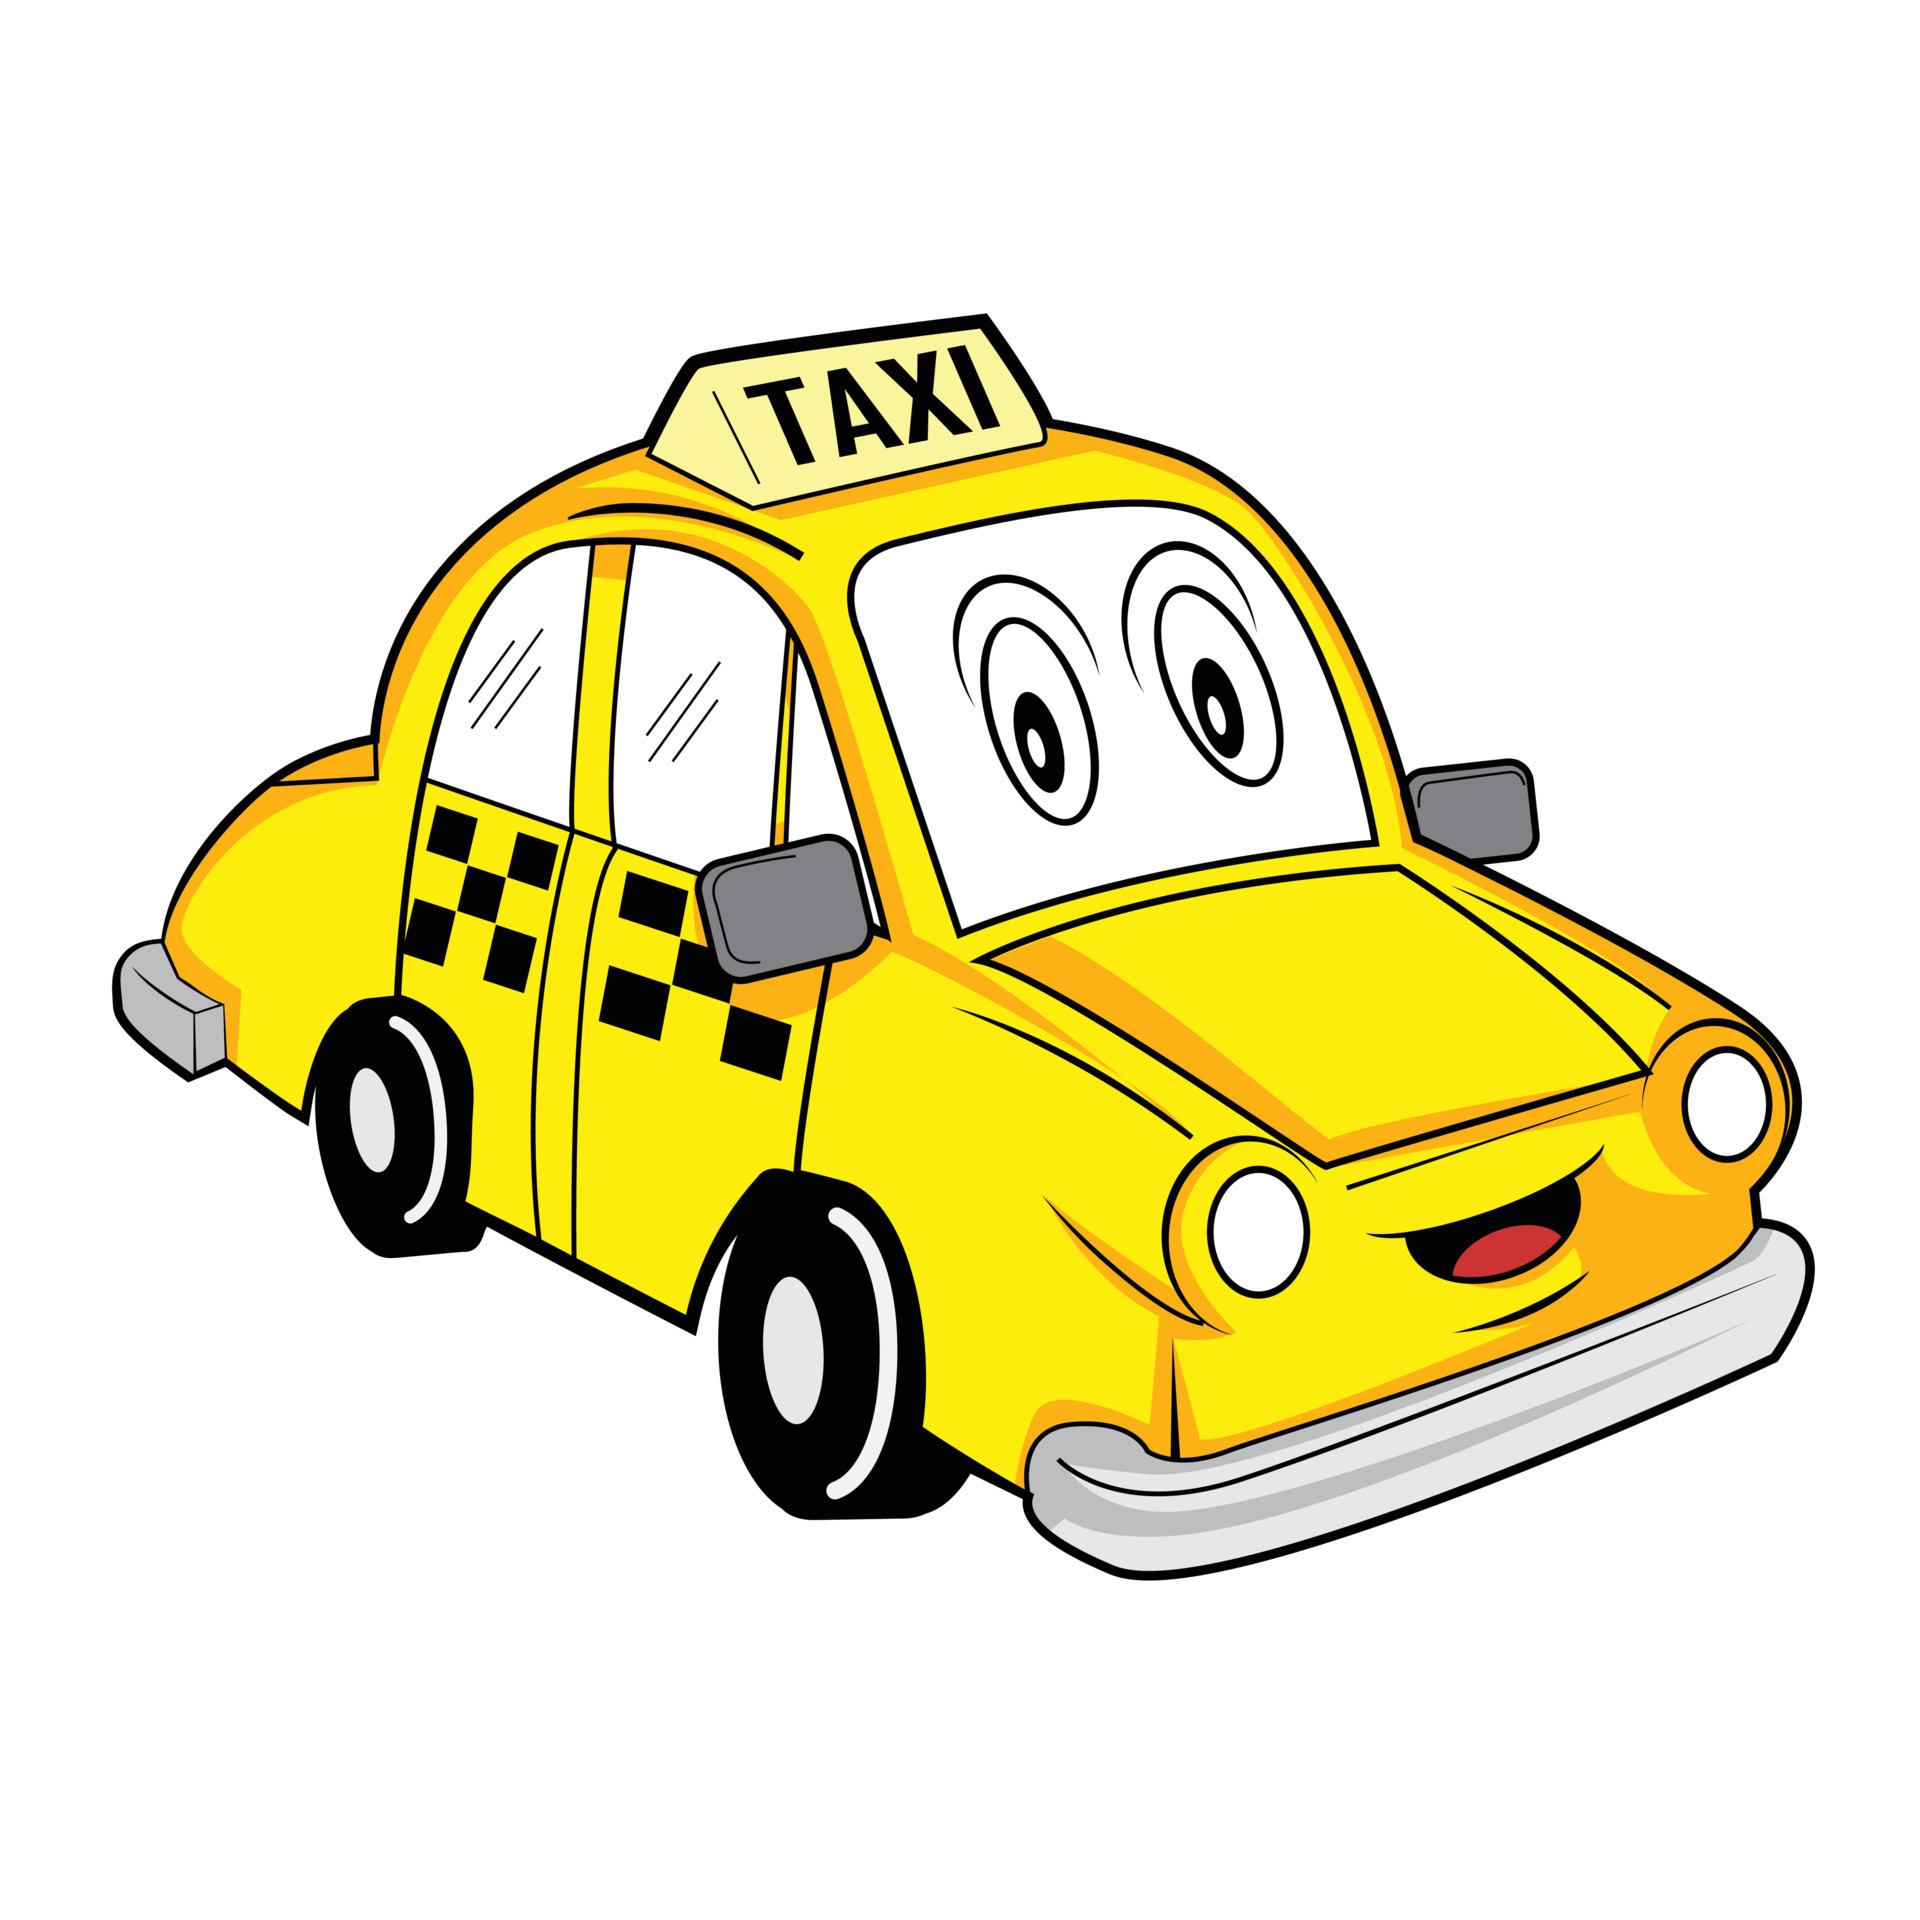  Maxi Taxi  thumbnail